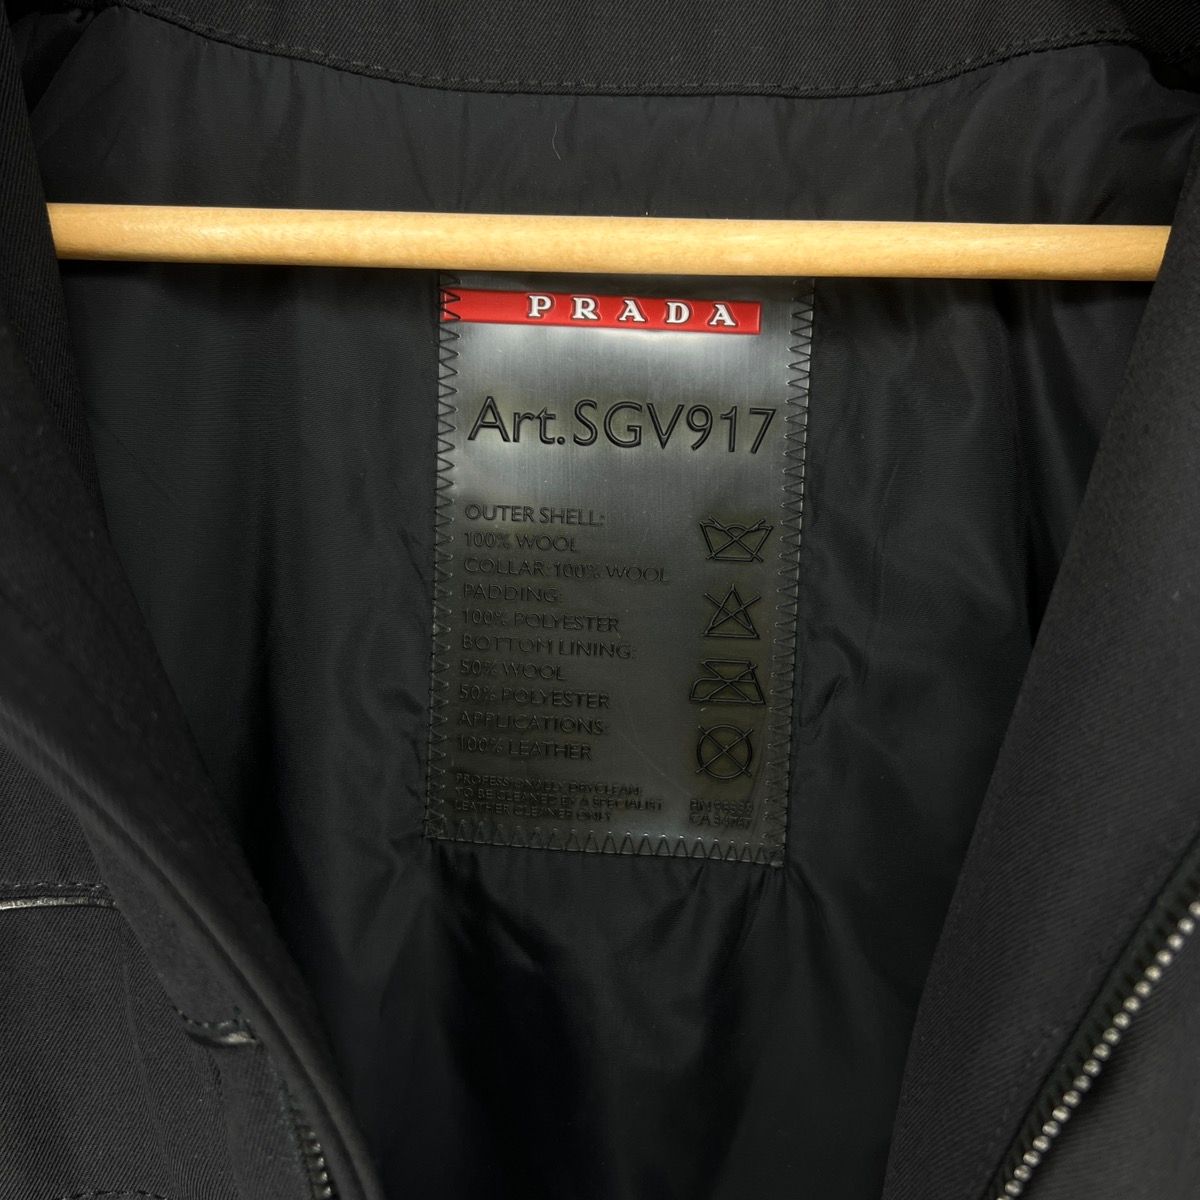 Prada Prada Milano Military Jacket Belted Coat Black Wool Designer Size US M / EU 48-50 / 2 - 8 Thumbnail